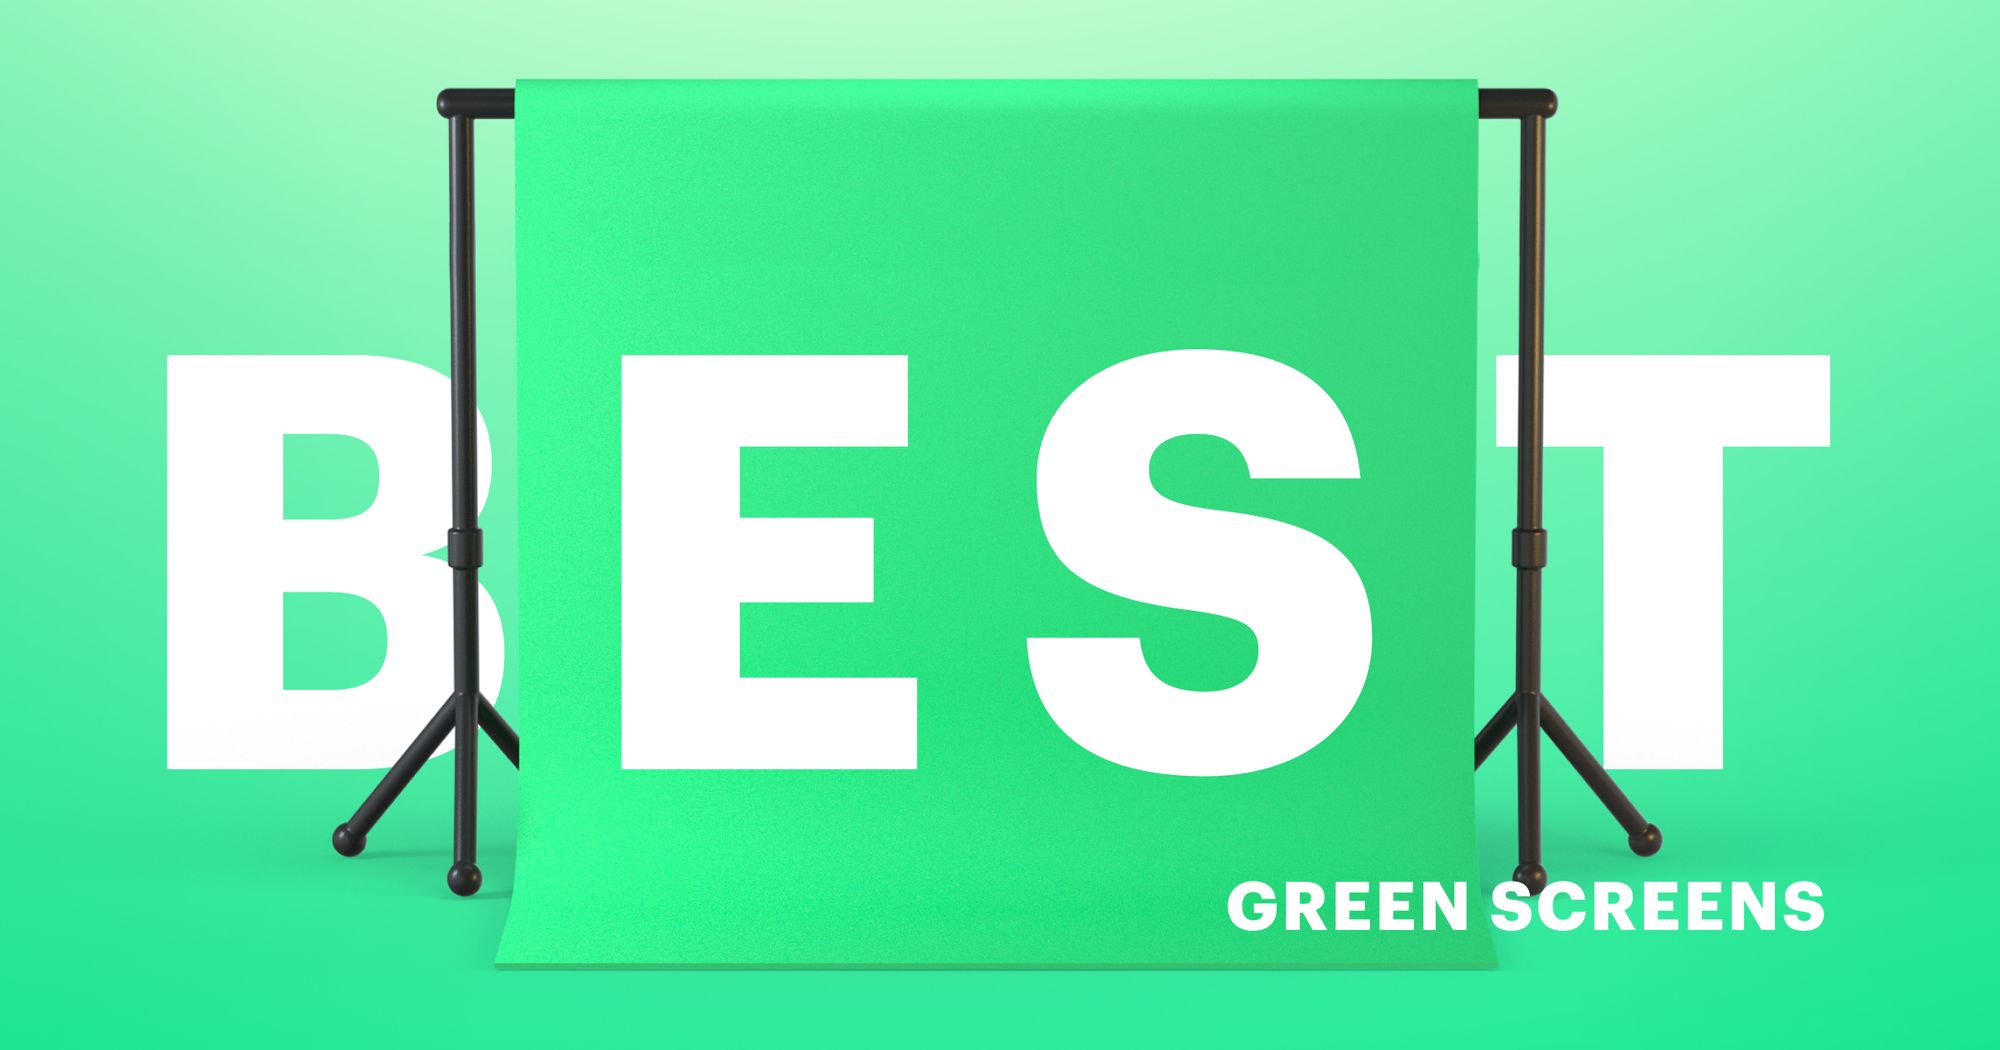 Green screen là một công nghệ phát trực tiếp tuyệt vời, hãy xem hình ảnh để hiểu rõ hơn về sự linh hoạt và tiềm năng của Green screens trong đối tượng bạn muốn giới thiệu.